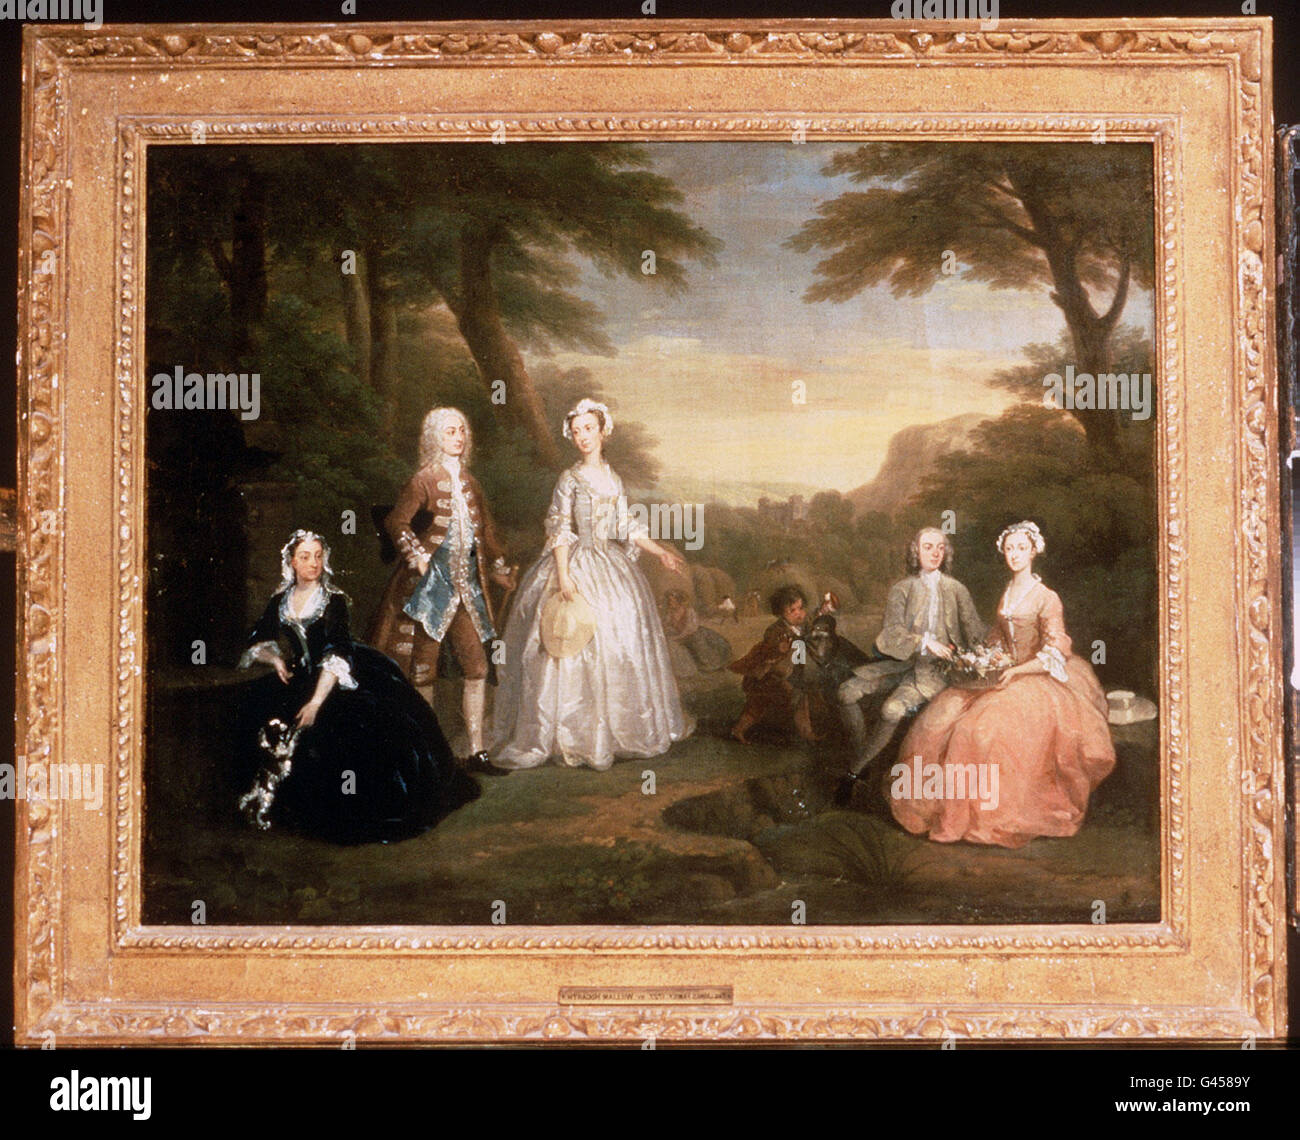 William Hogarth (1697-1764) 'The Jones Family conversation Piece 69 x 96,5 cm, huile sur toile) a été acquis par les Musées nationaux et les Galeries du pays de Galles dans une vente de traité privé organisée par Sotheby's de Londres.Photos PA. Banque D'Images